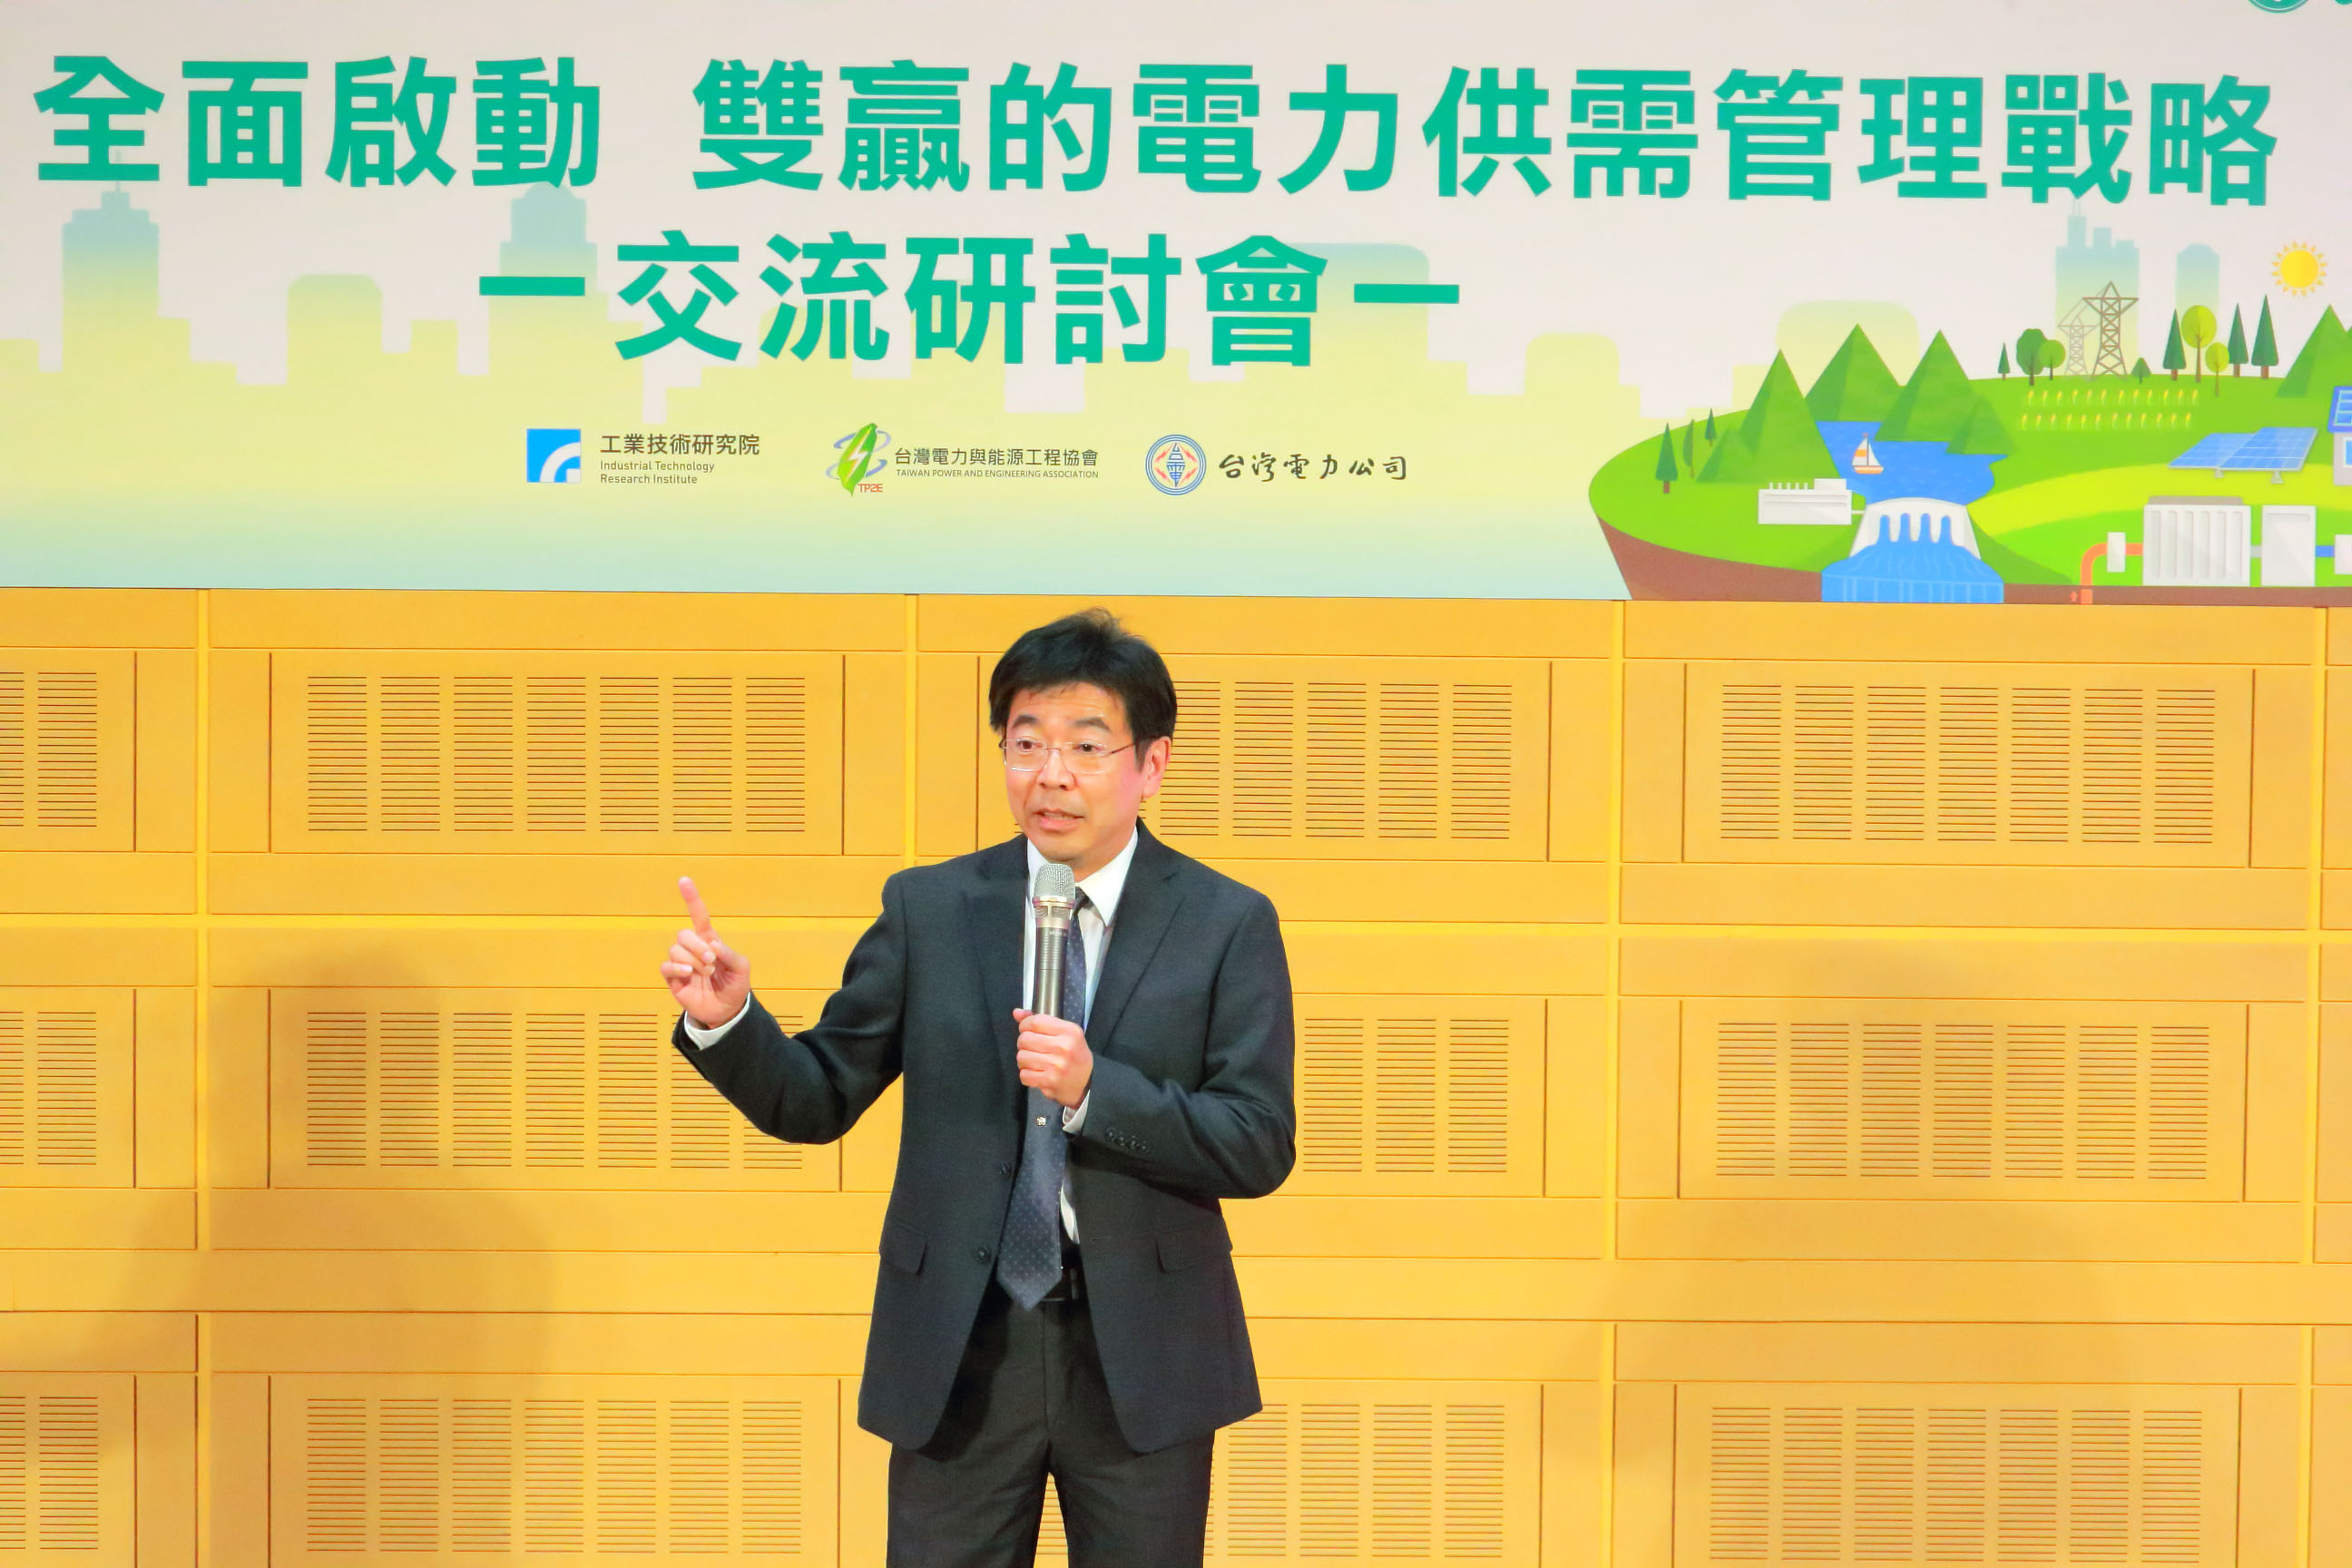 工研院院長劉文雄指出工研院能提供技術解方，但電力供需穩定更需要大家一起合作與努力，才能共同創造優質投資環境與經濟雙贏的未來。